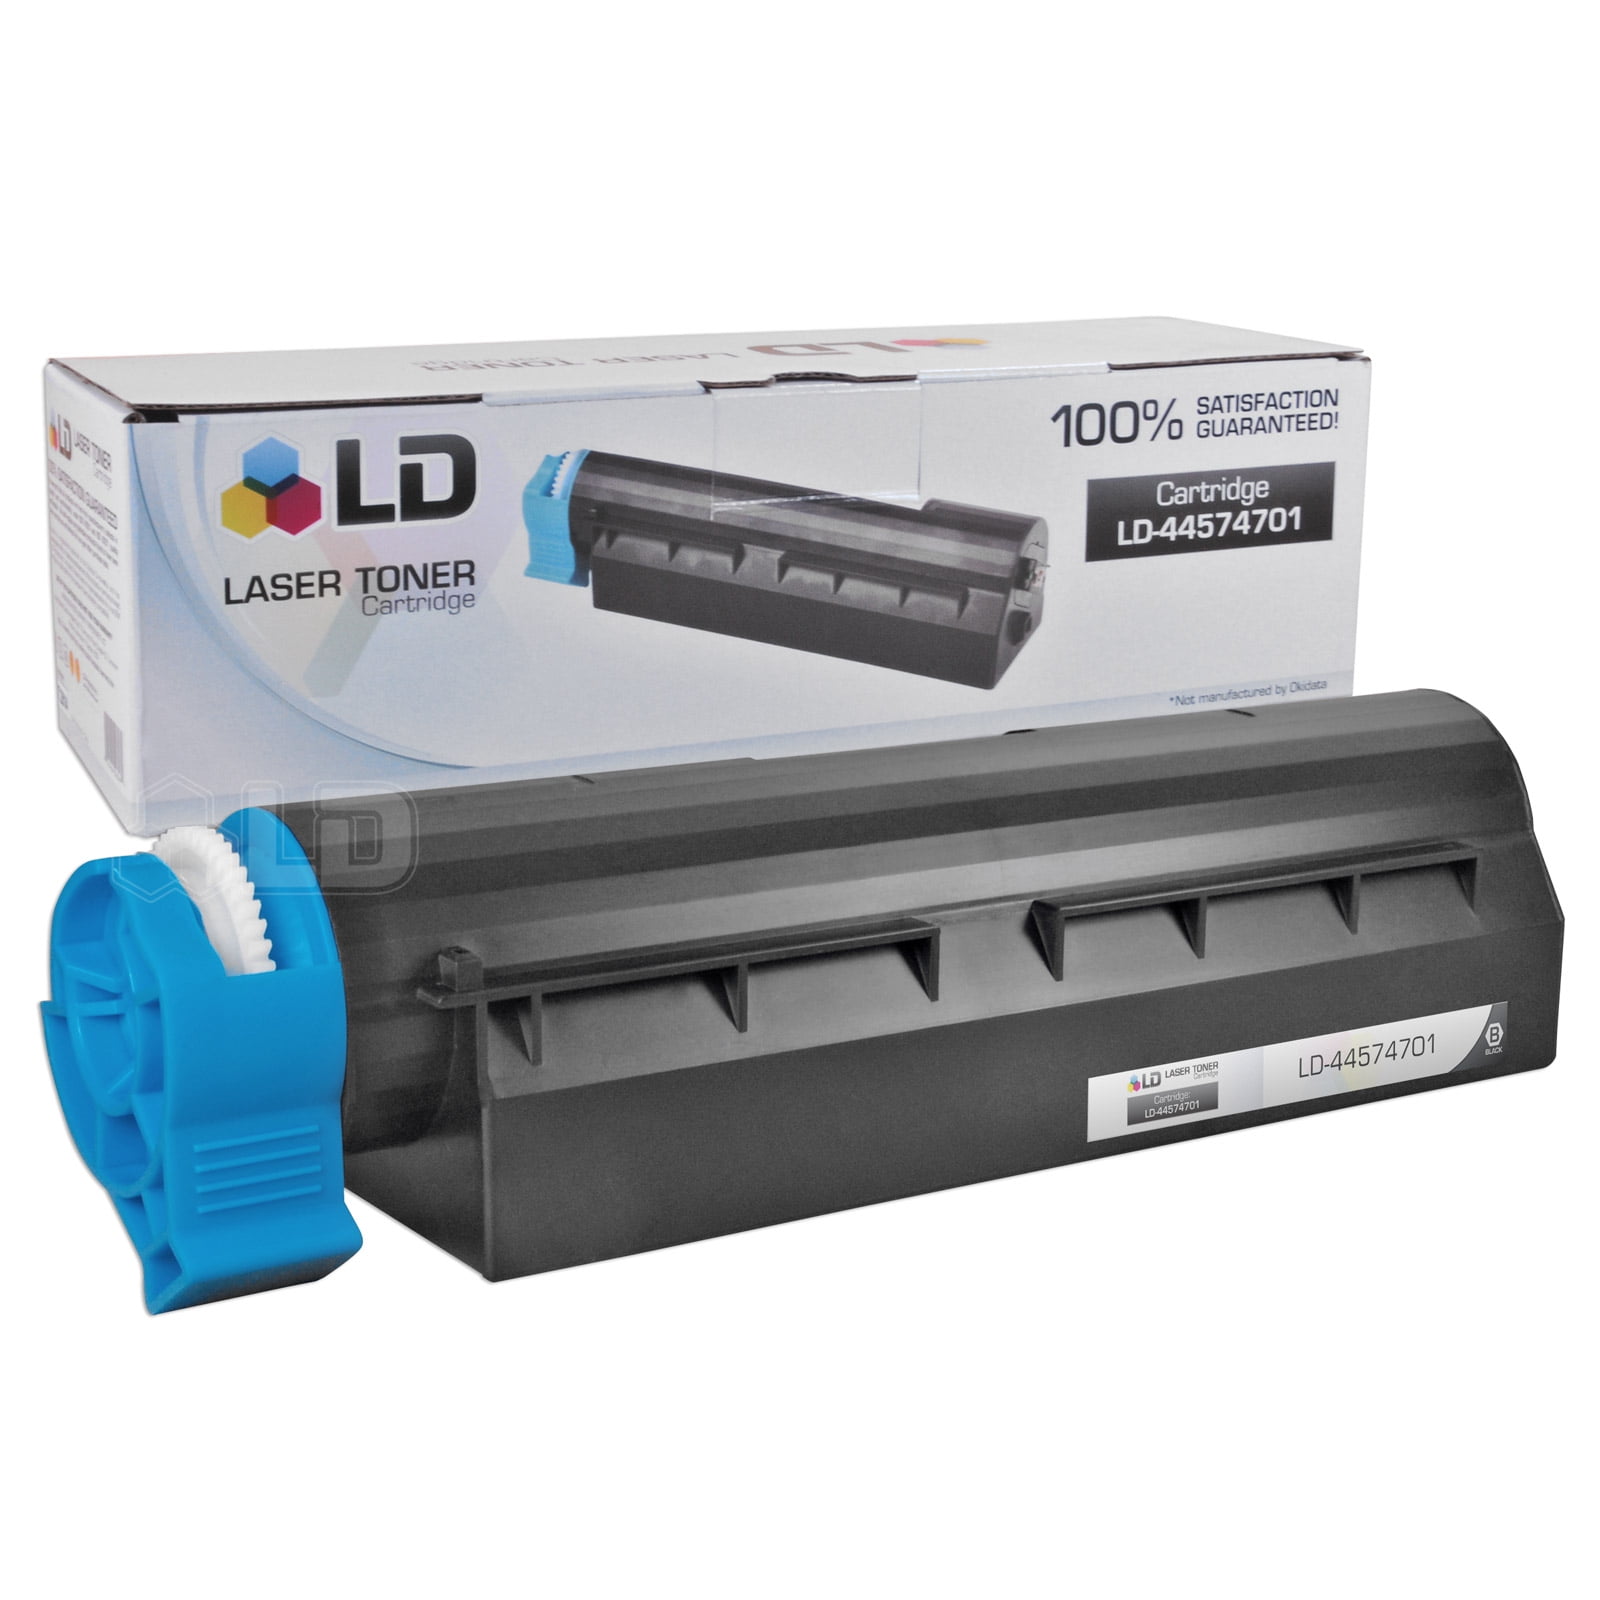 gunstig halfgeleider Vergevingsgezind LD Okidata Compatible 44574701 Black Laser Toner Cartridge for use in the  MB461 MFP, MB471, MB471W, B411d, B411dn, B431d & B431dn s - Walmart.com